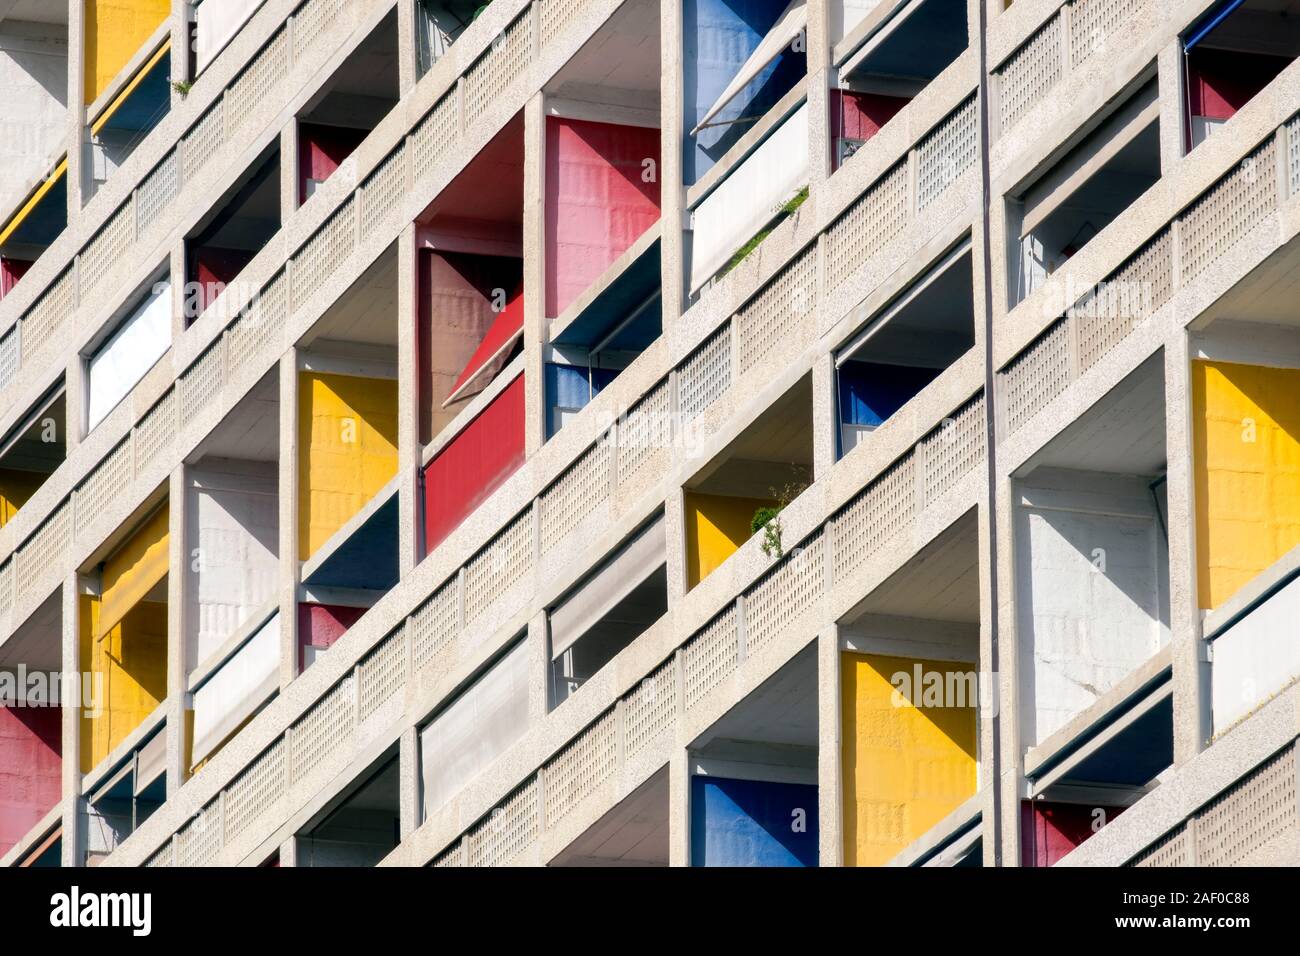 Colorful / balcons colorés, Cité Radieuse ou unité d'Habitation de Le Corbusier, Marseille, Provence, France, Europe Banque D'Images